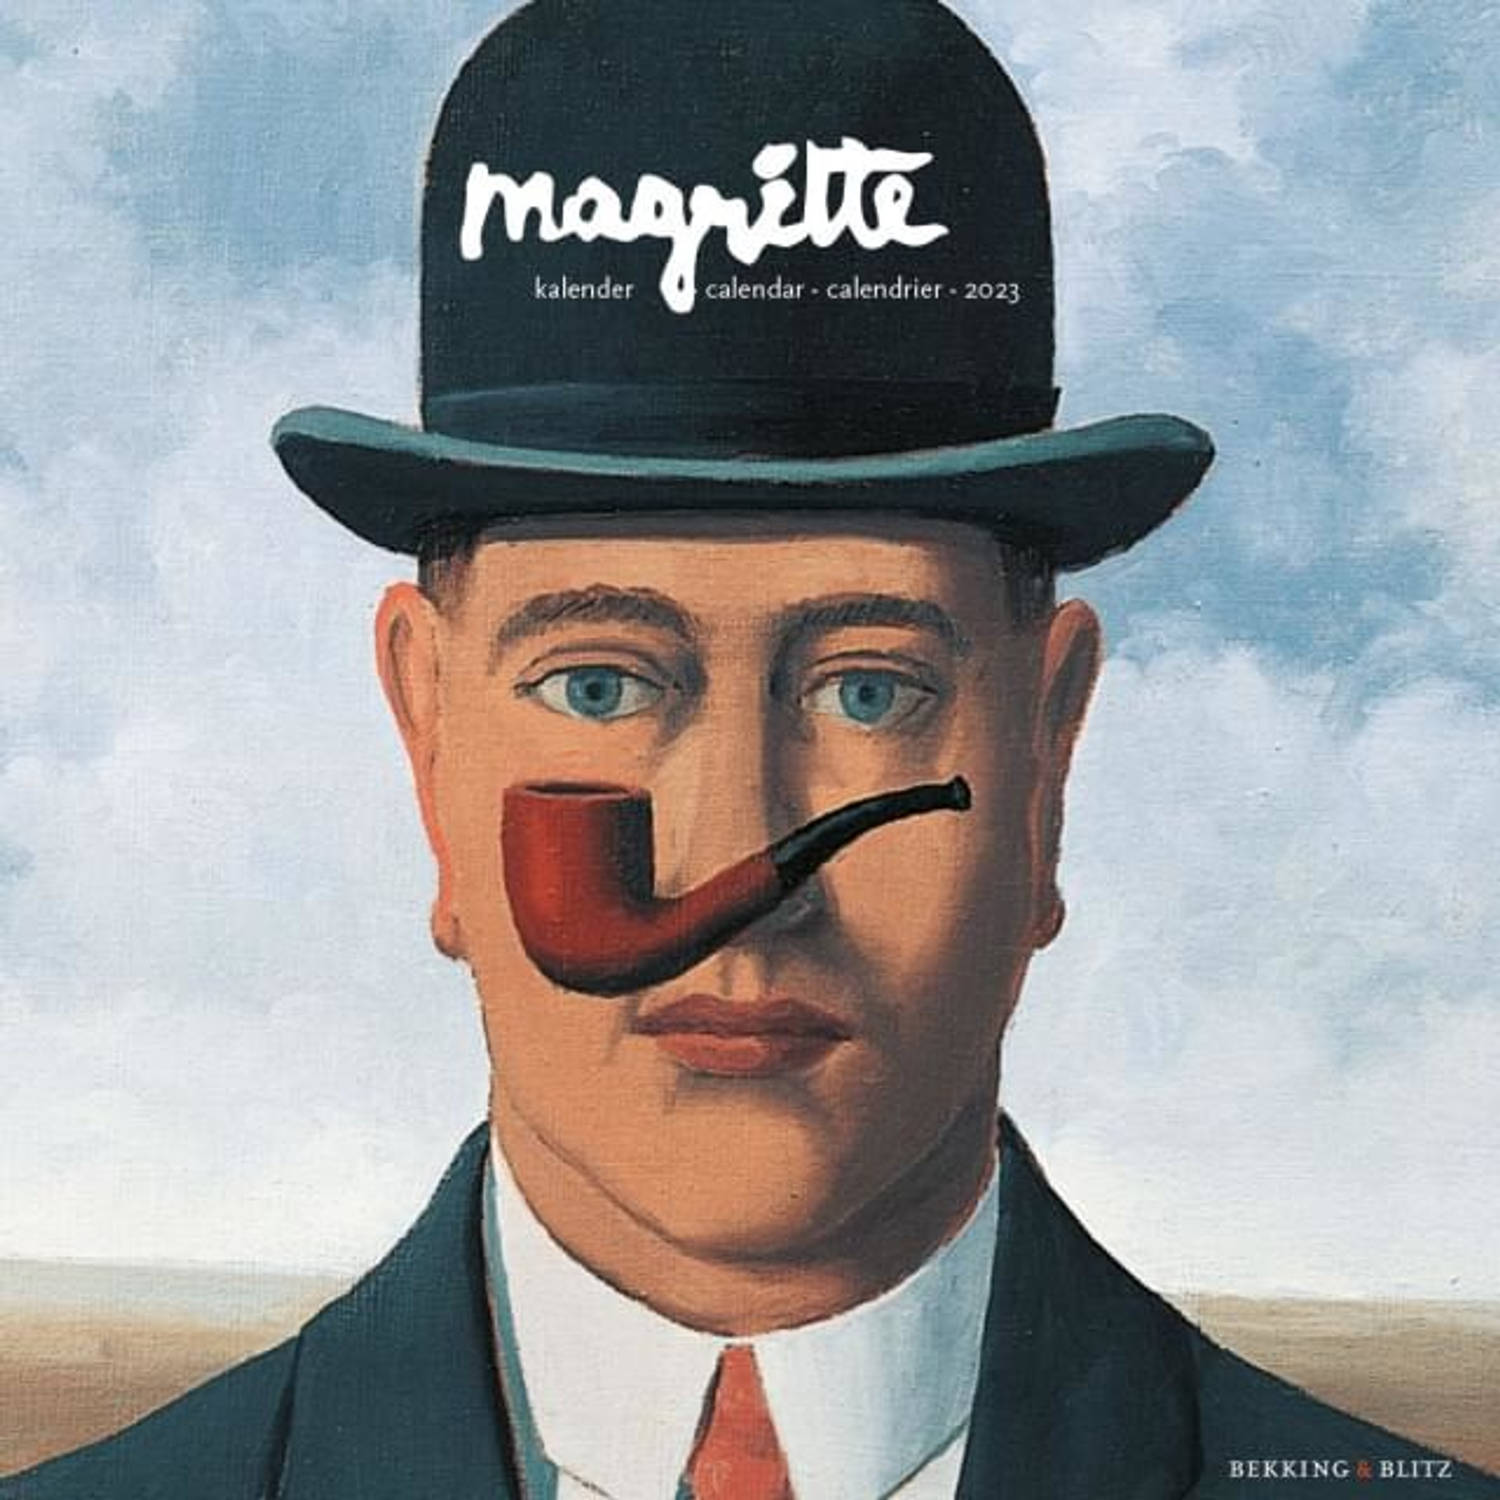 Magritte Kalender 2023